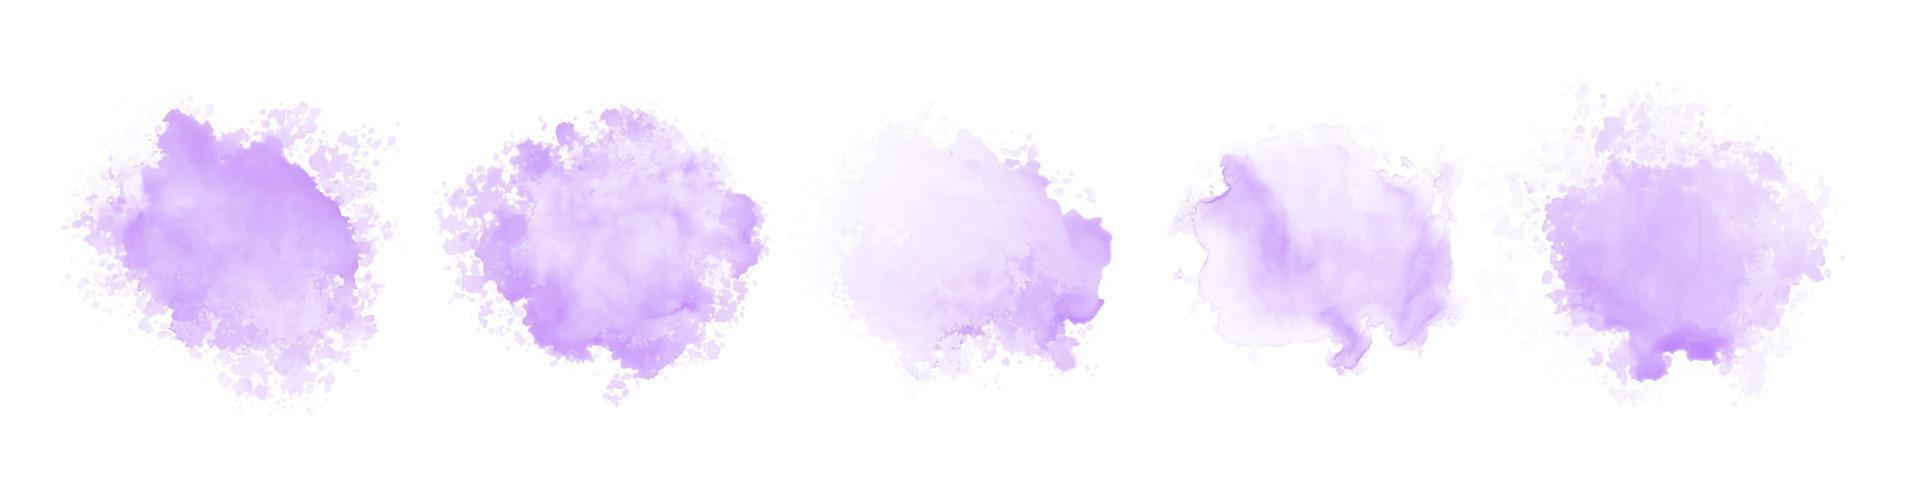 uppsättning abstrakt lila akvarell vattenstänk på en vit bakgrund vektor